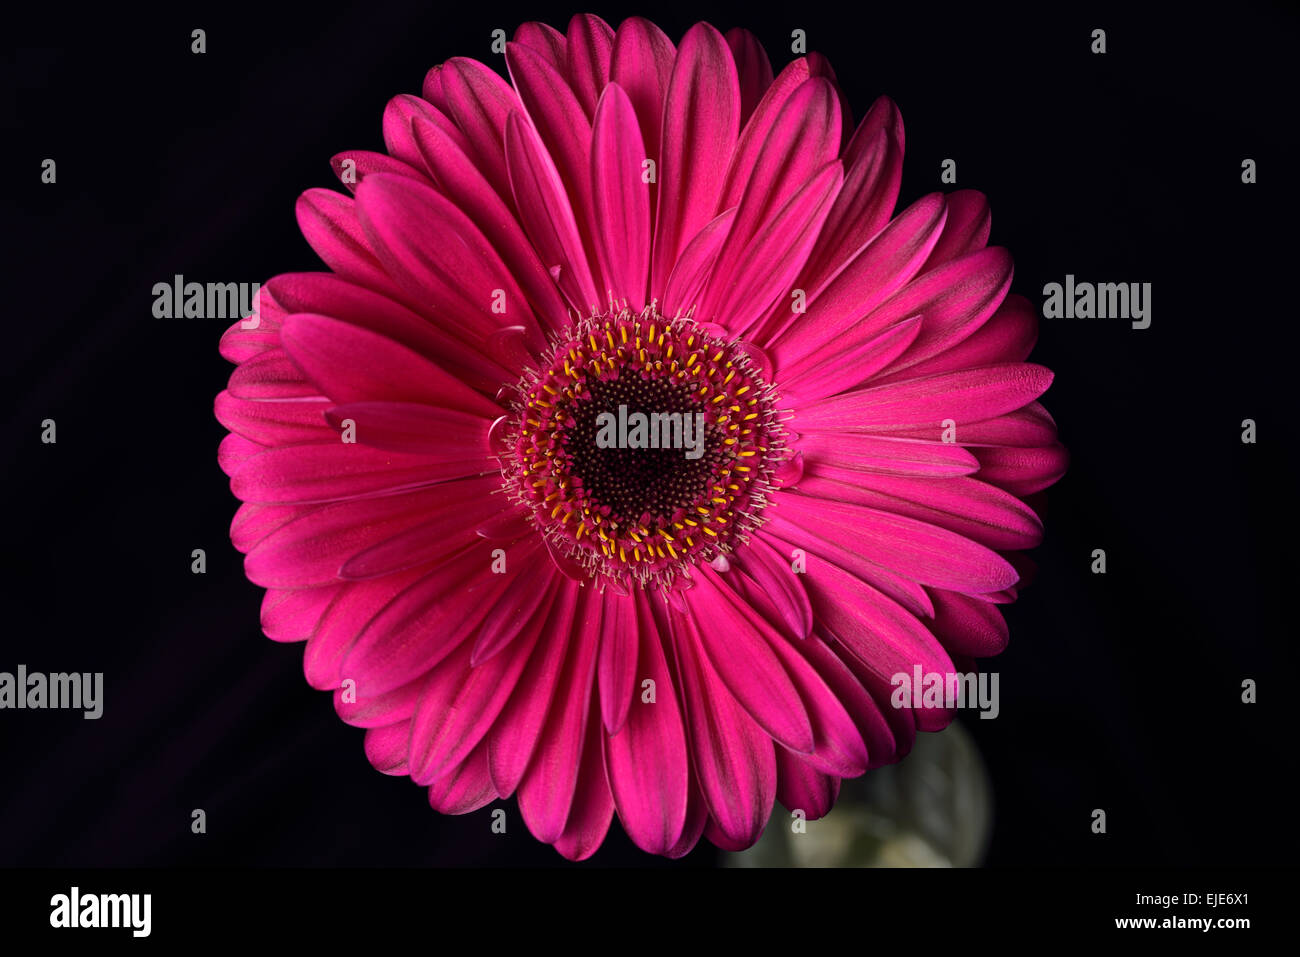 Rosa Gerbera Daisy Blume mit einem dunklen Hintergrund Stockfoto